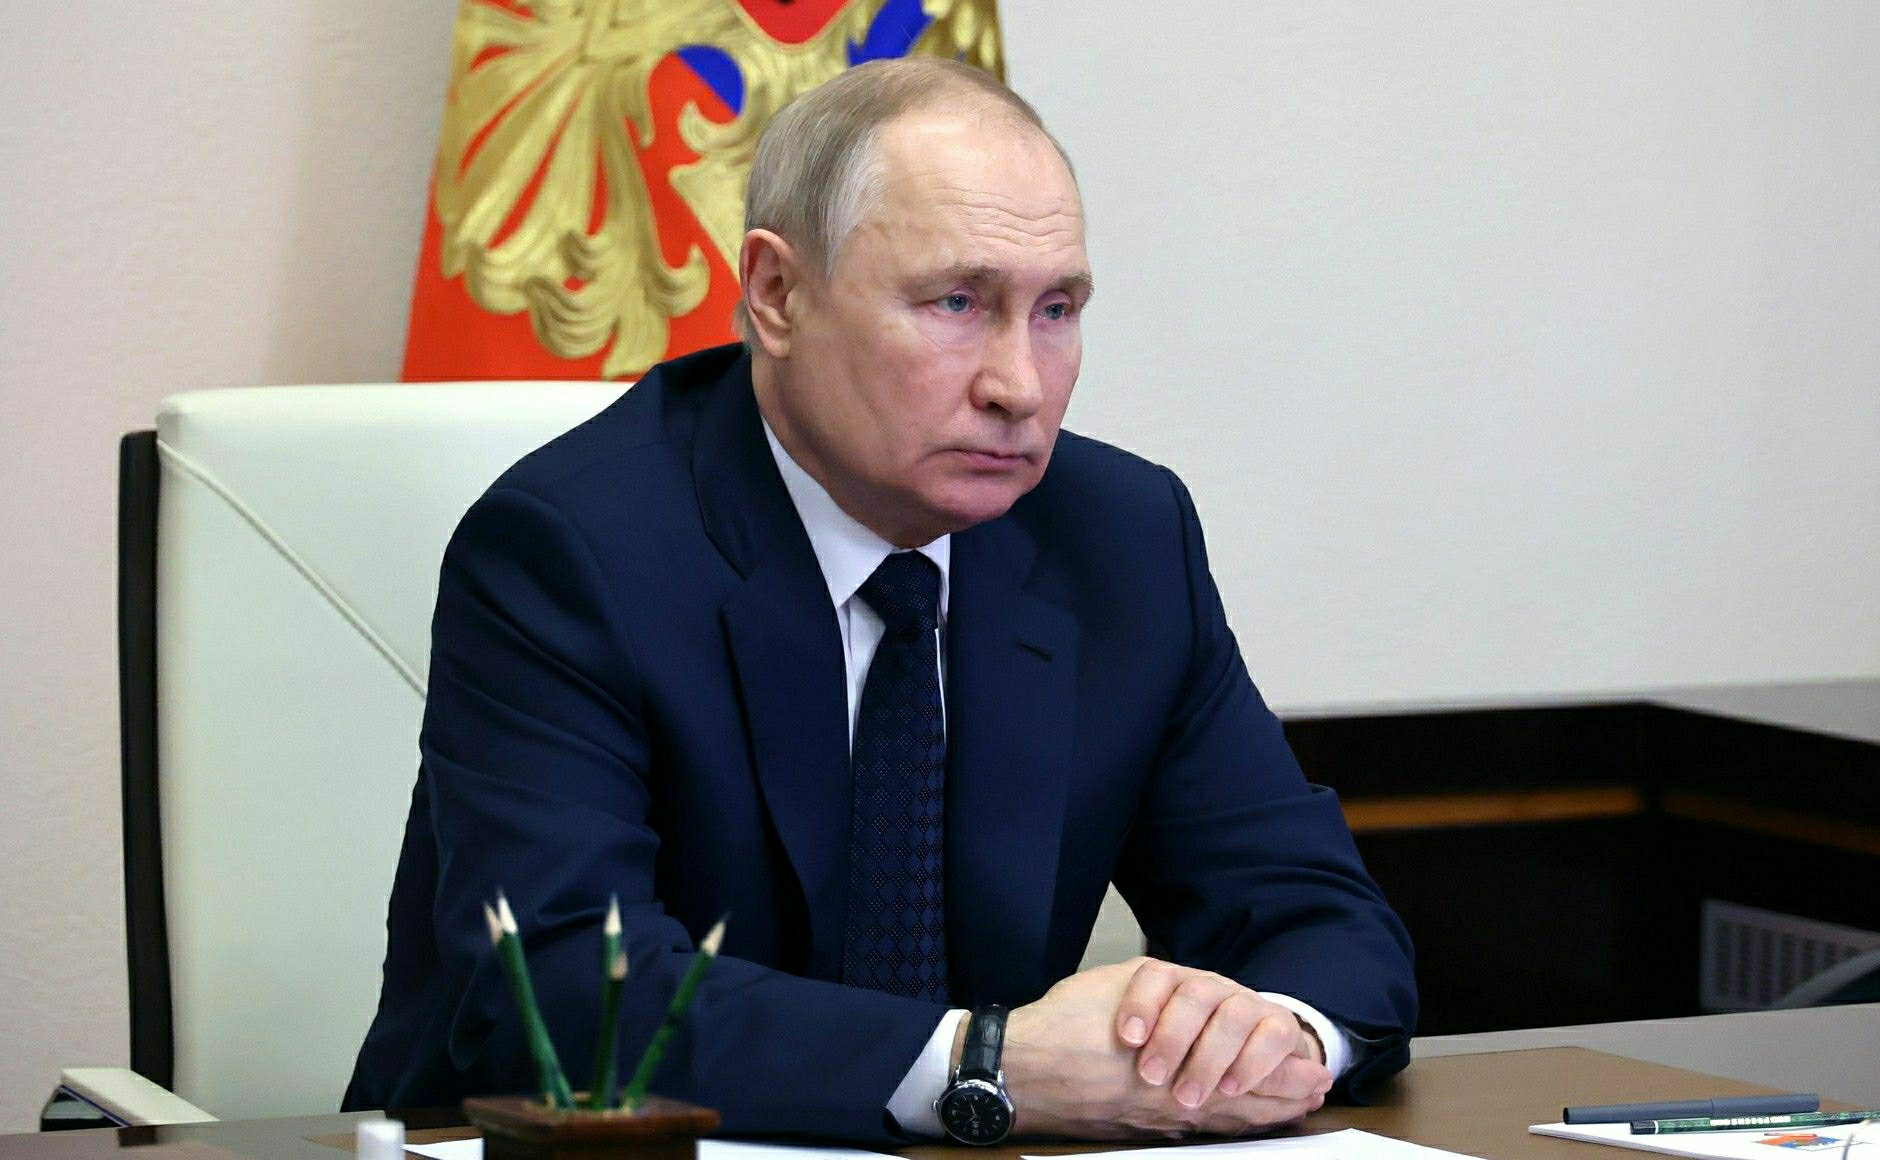 Kommentar zu Putins Waffenruhe - Der russische Präsident testet den Westen